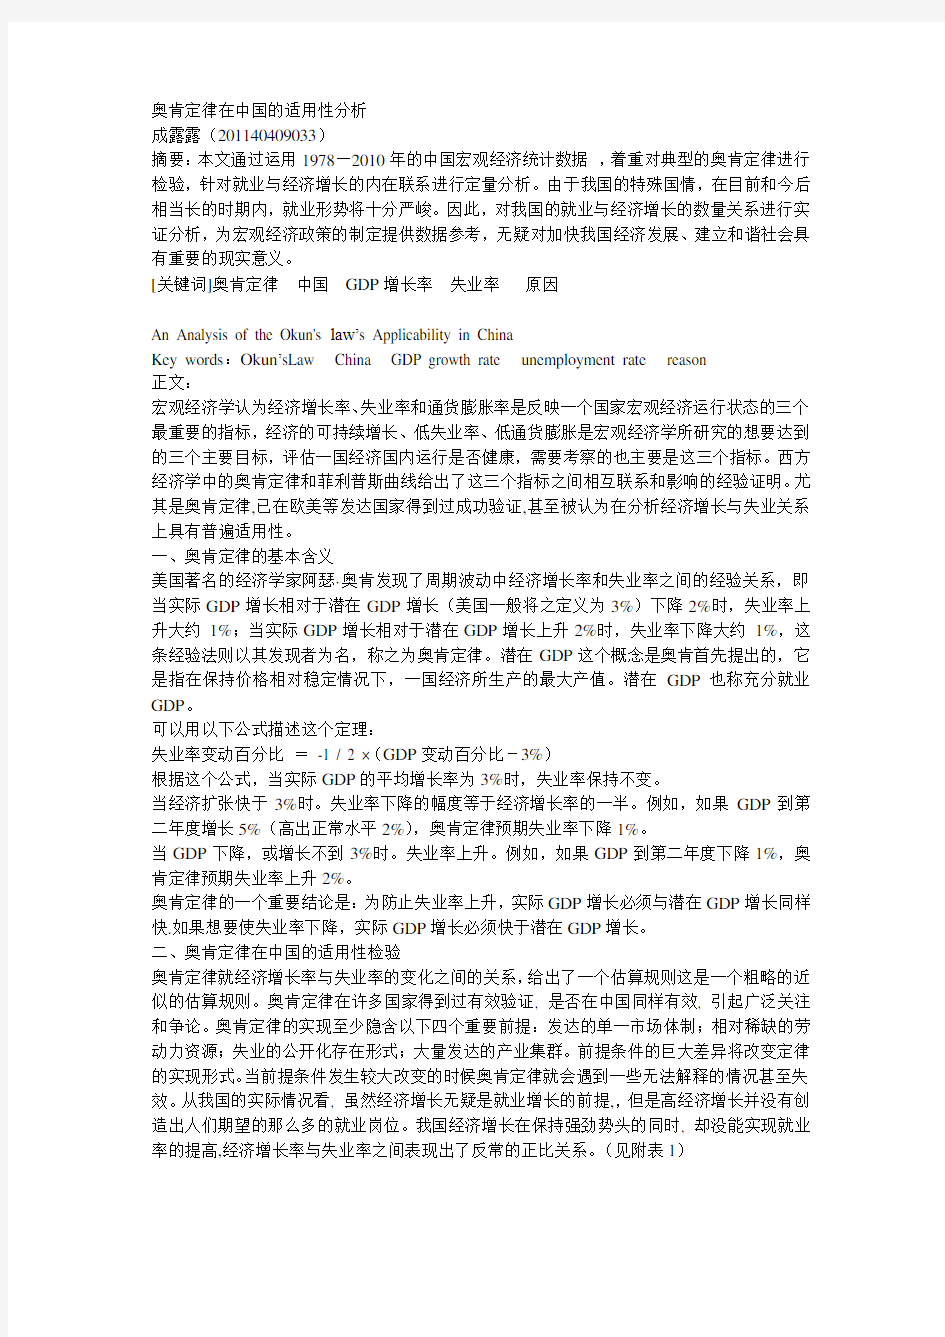 奥肯定律在中国的适用性研究